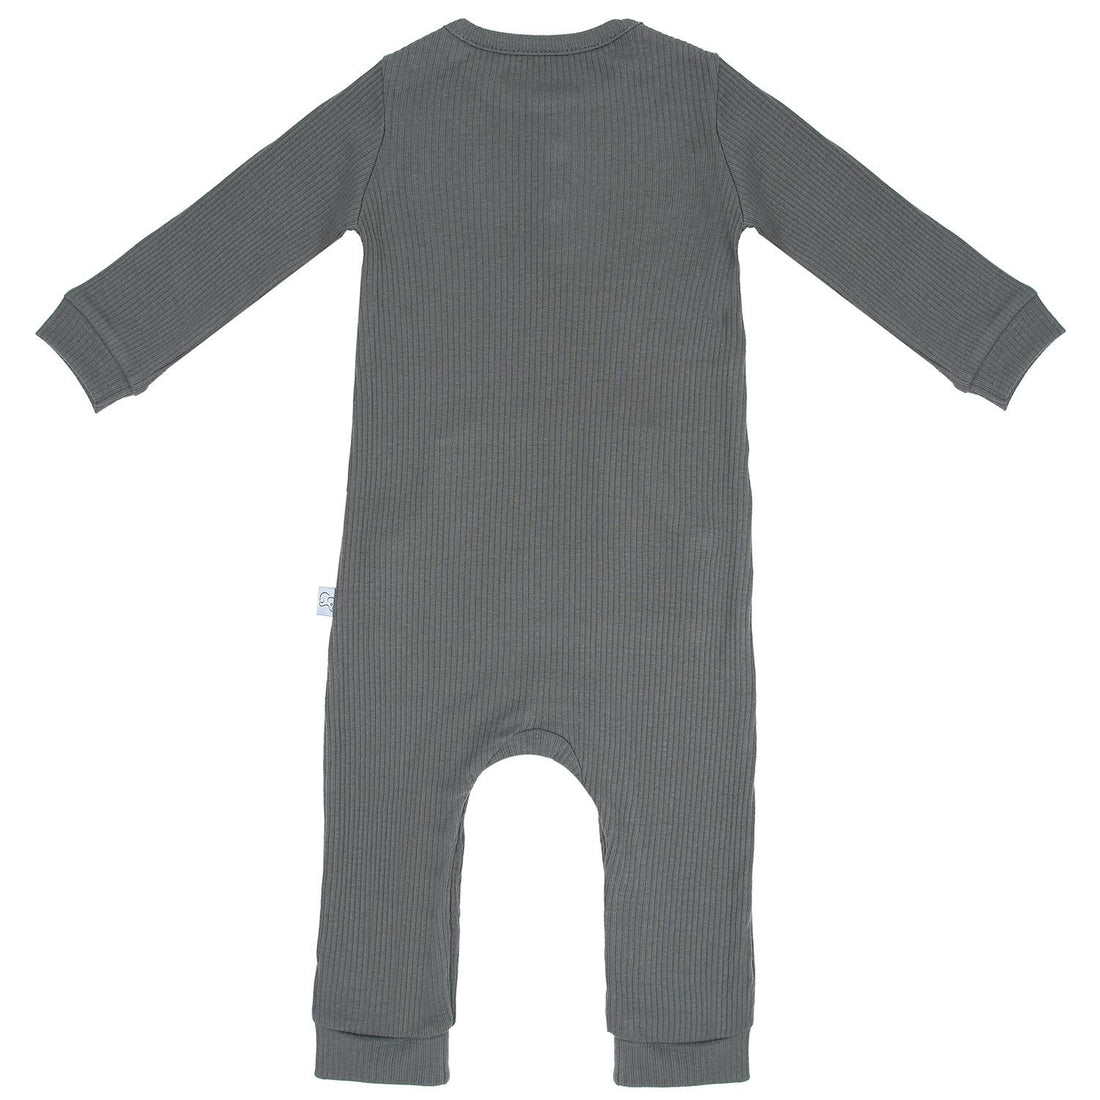 ملابس الأطفال والرضع من القماش المشروط باللون الرمادي